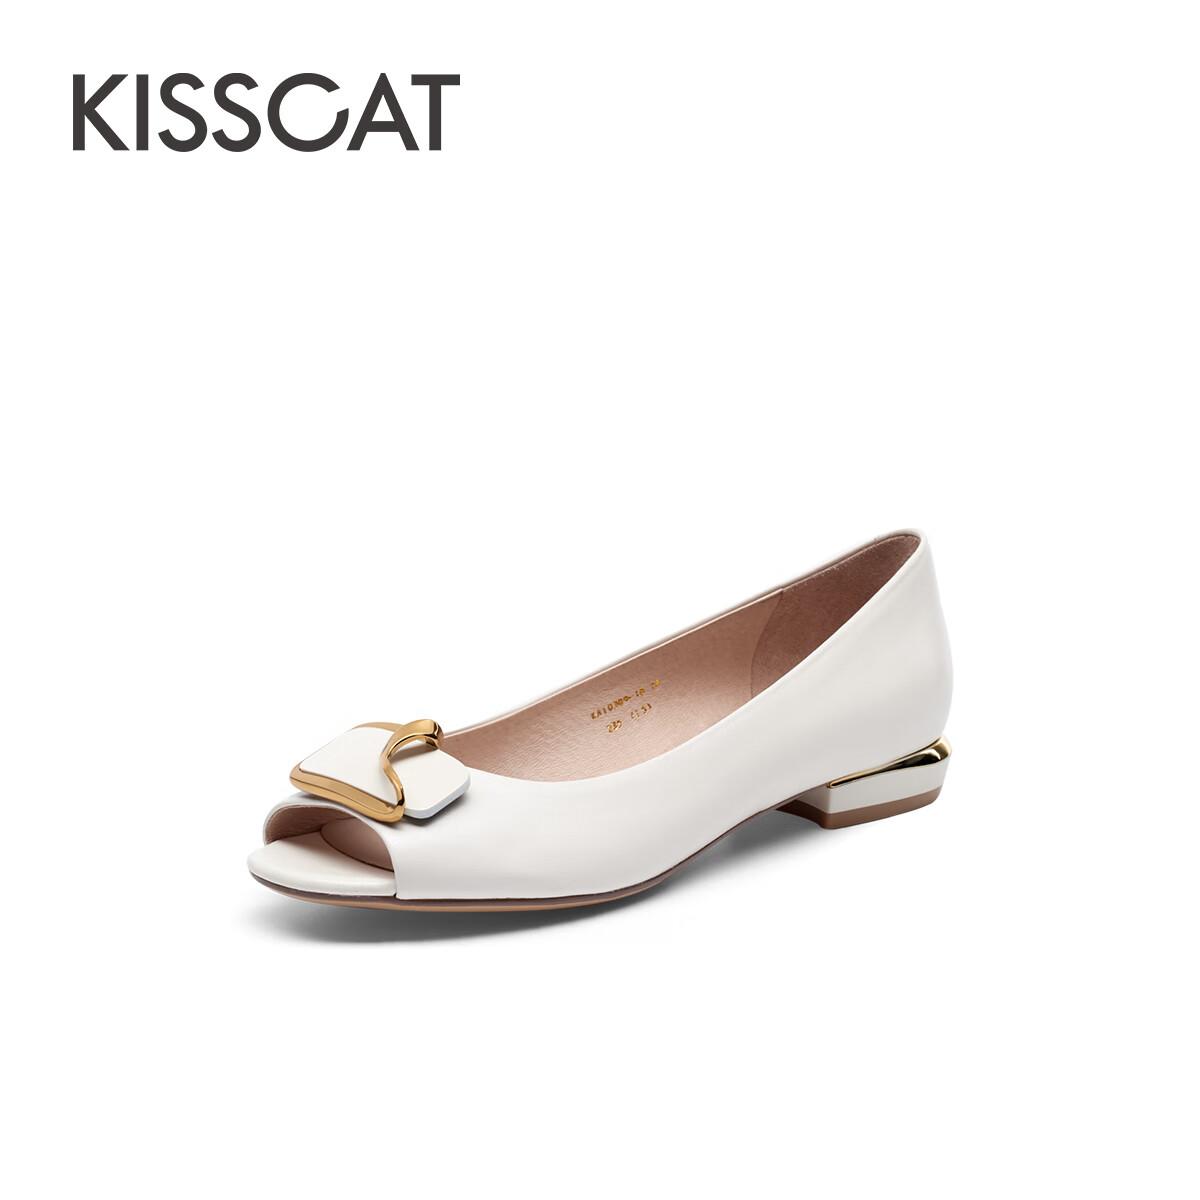 KISSCAT接吻猫女鞋春季真皮低跟鱼嘴鞋仙女风通勤时装凉鞋女KA40309-10 米白色羊皮革 37